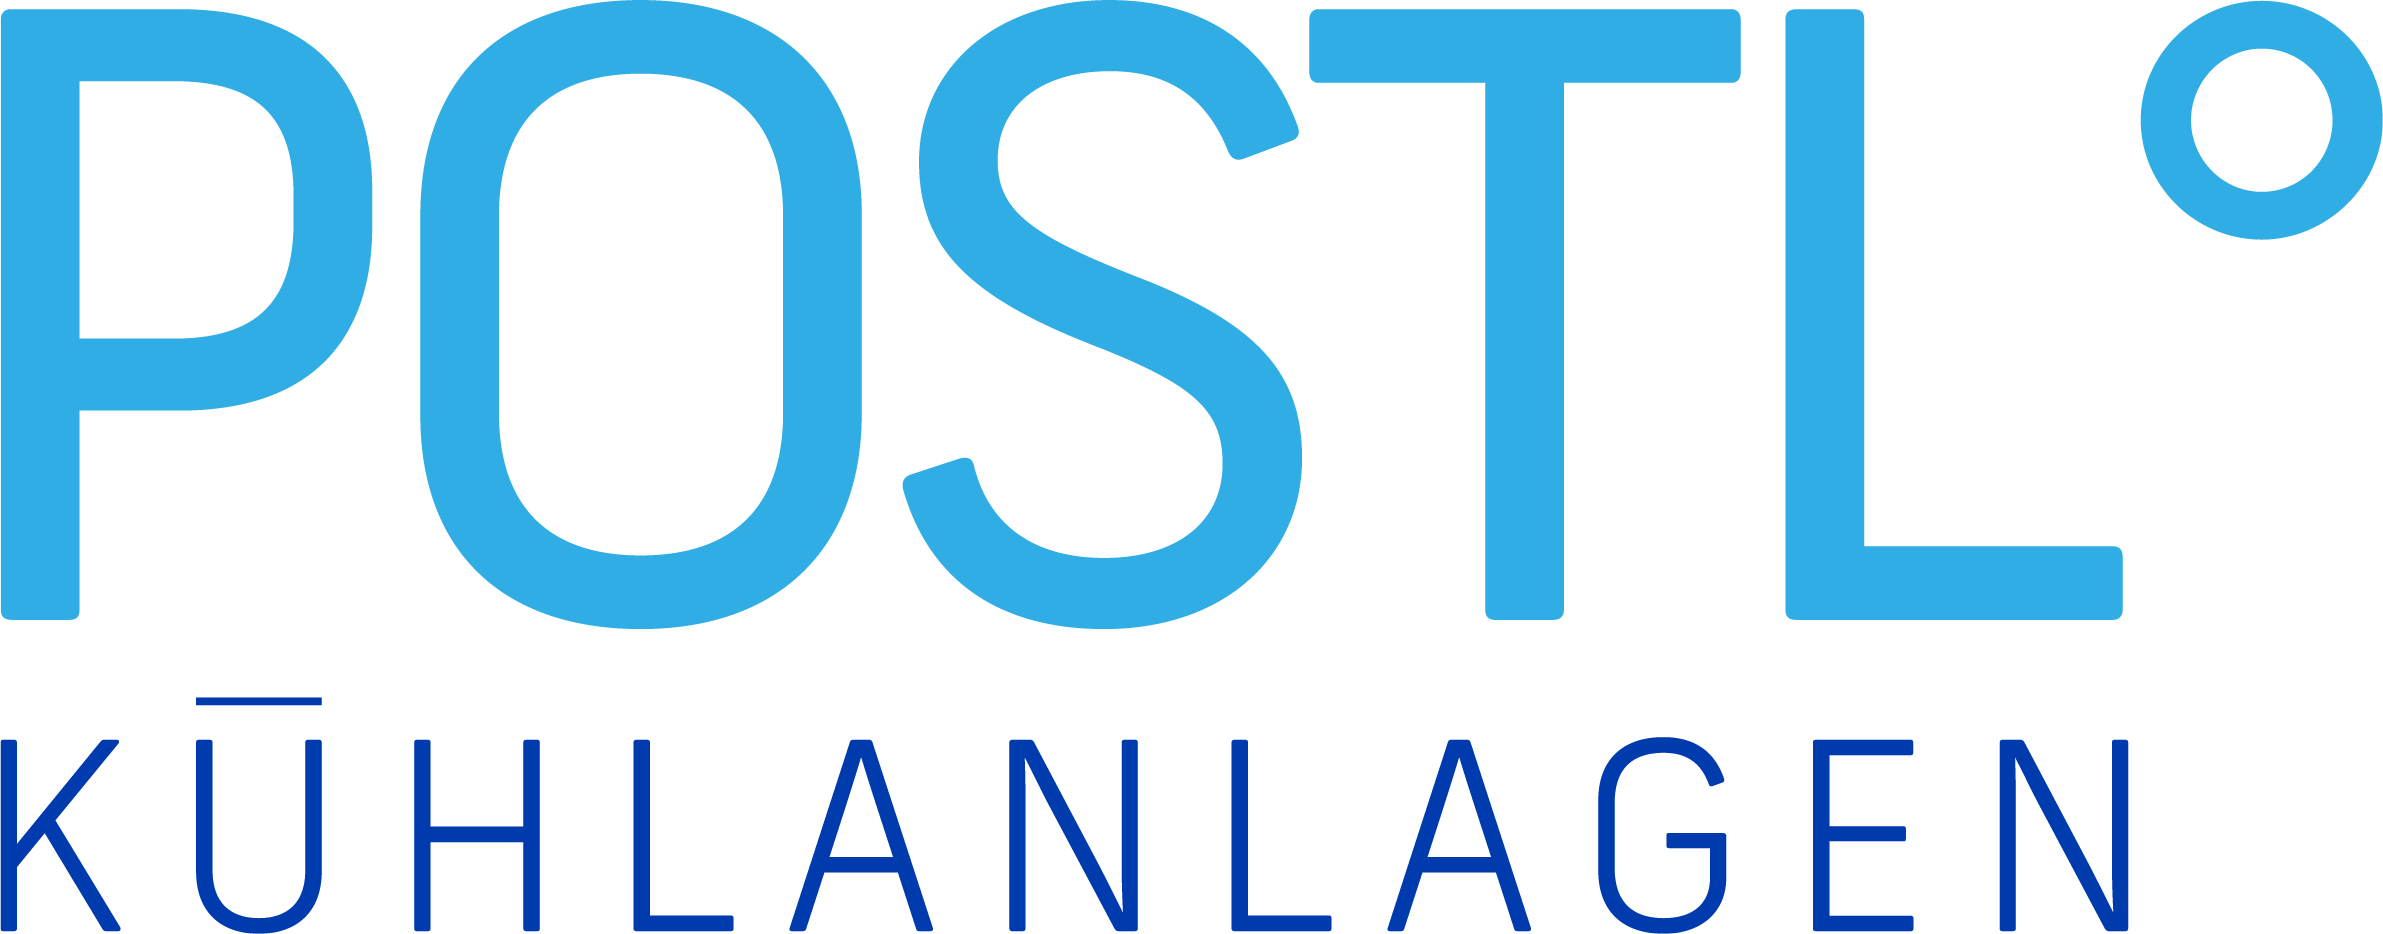 Logo Kühlanlagen Postl GmbH